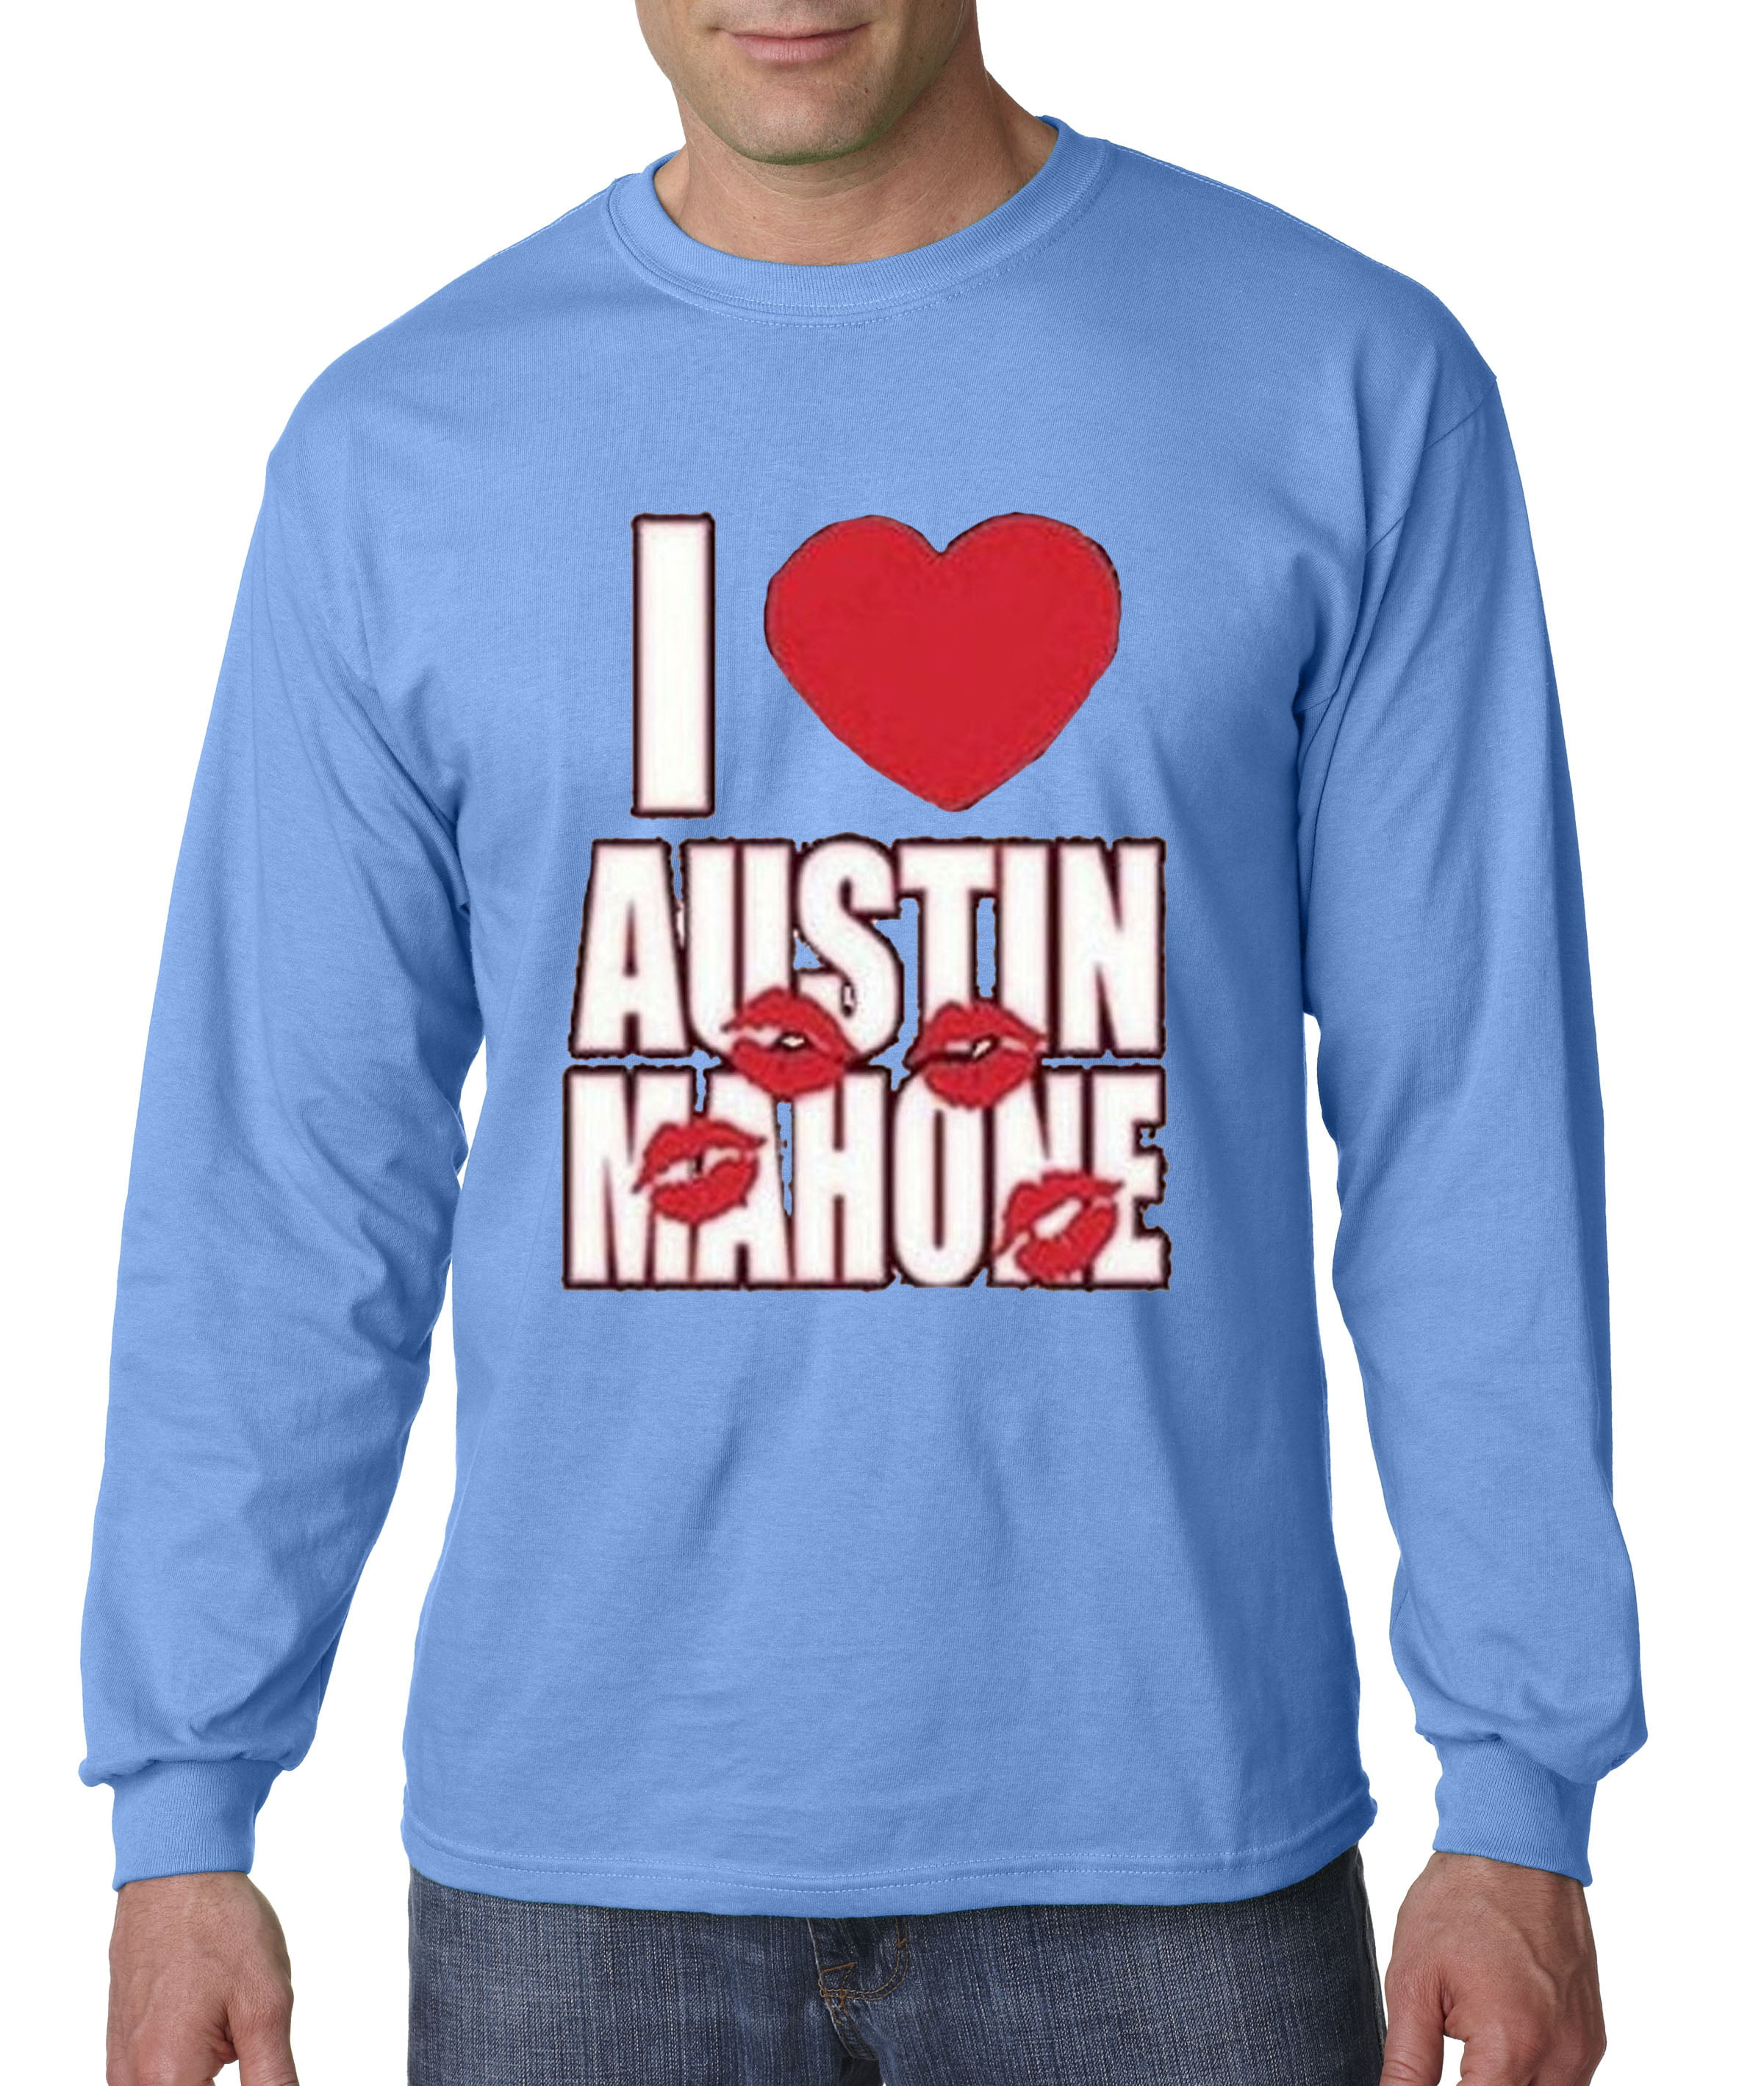 T austin shirts mahone Austin Mahone